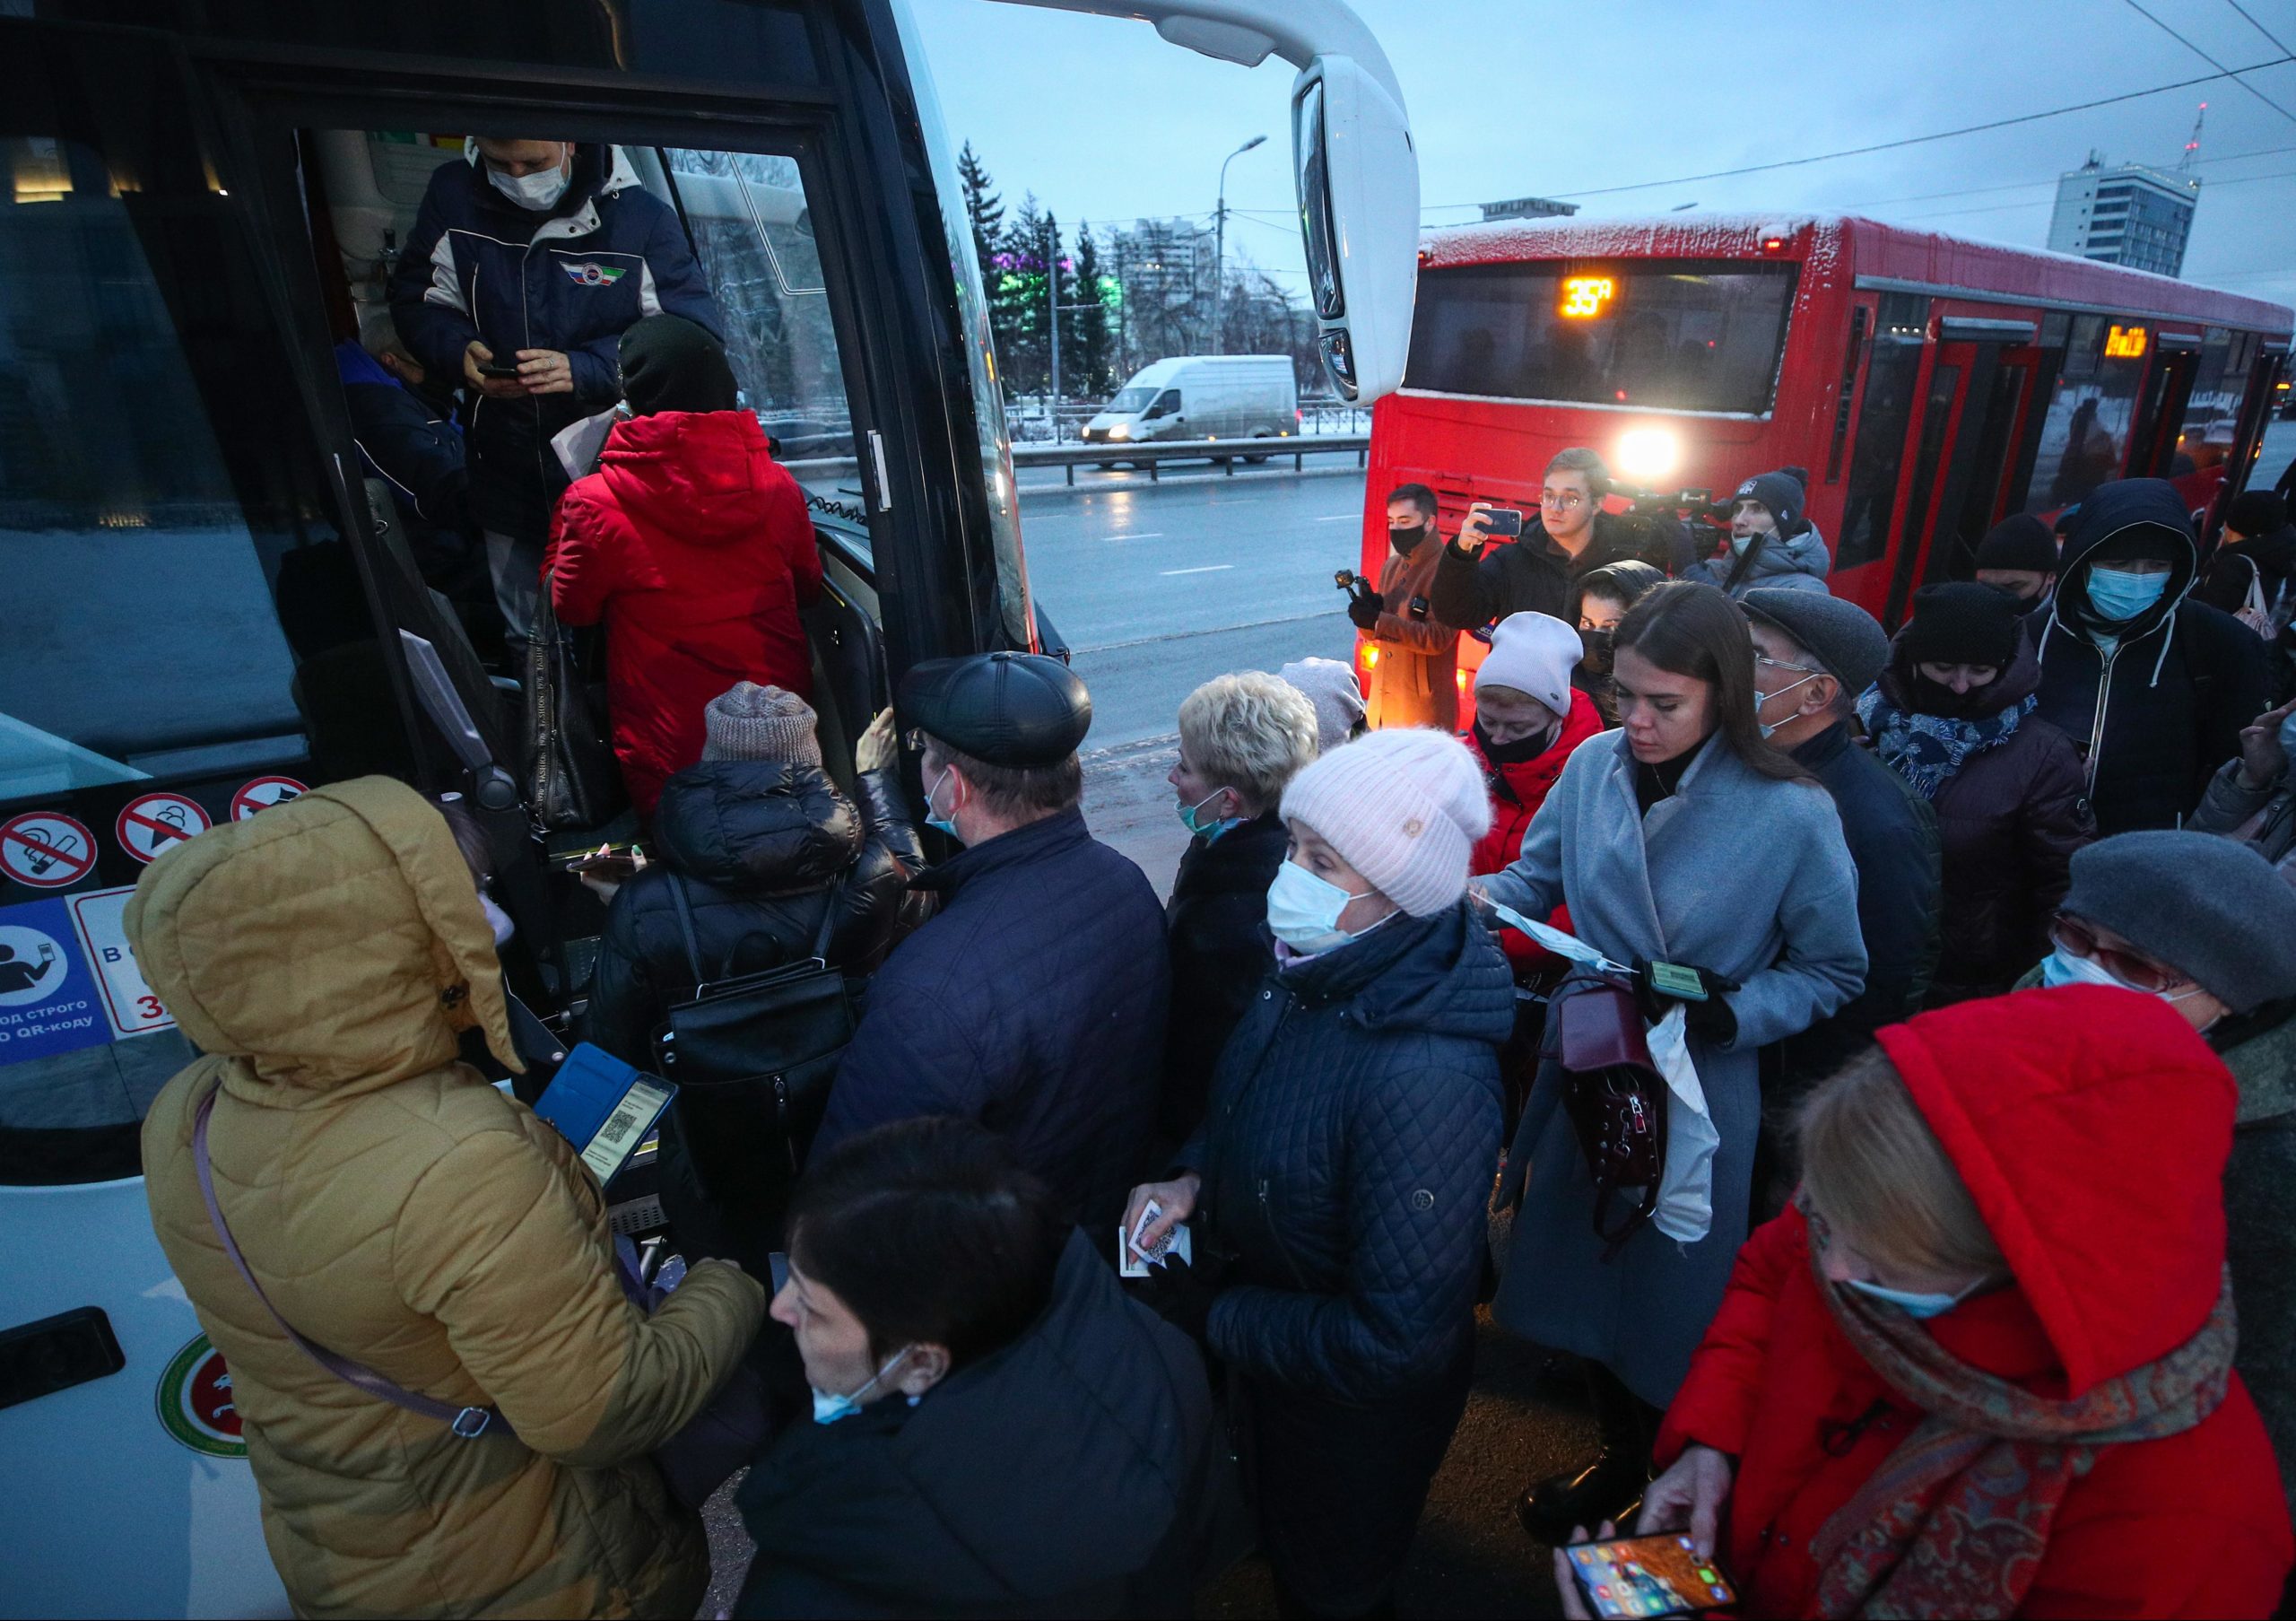 22 ноября 2018. Пассажиры общественного транспорта. Люди в автобусе. Пассажиры в автобусах Казани. Скандал в автобусе.